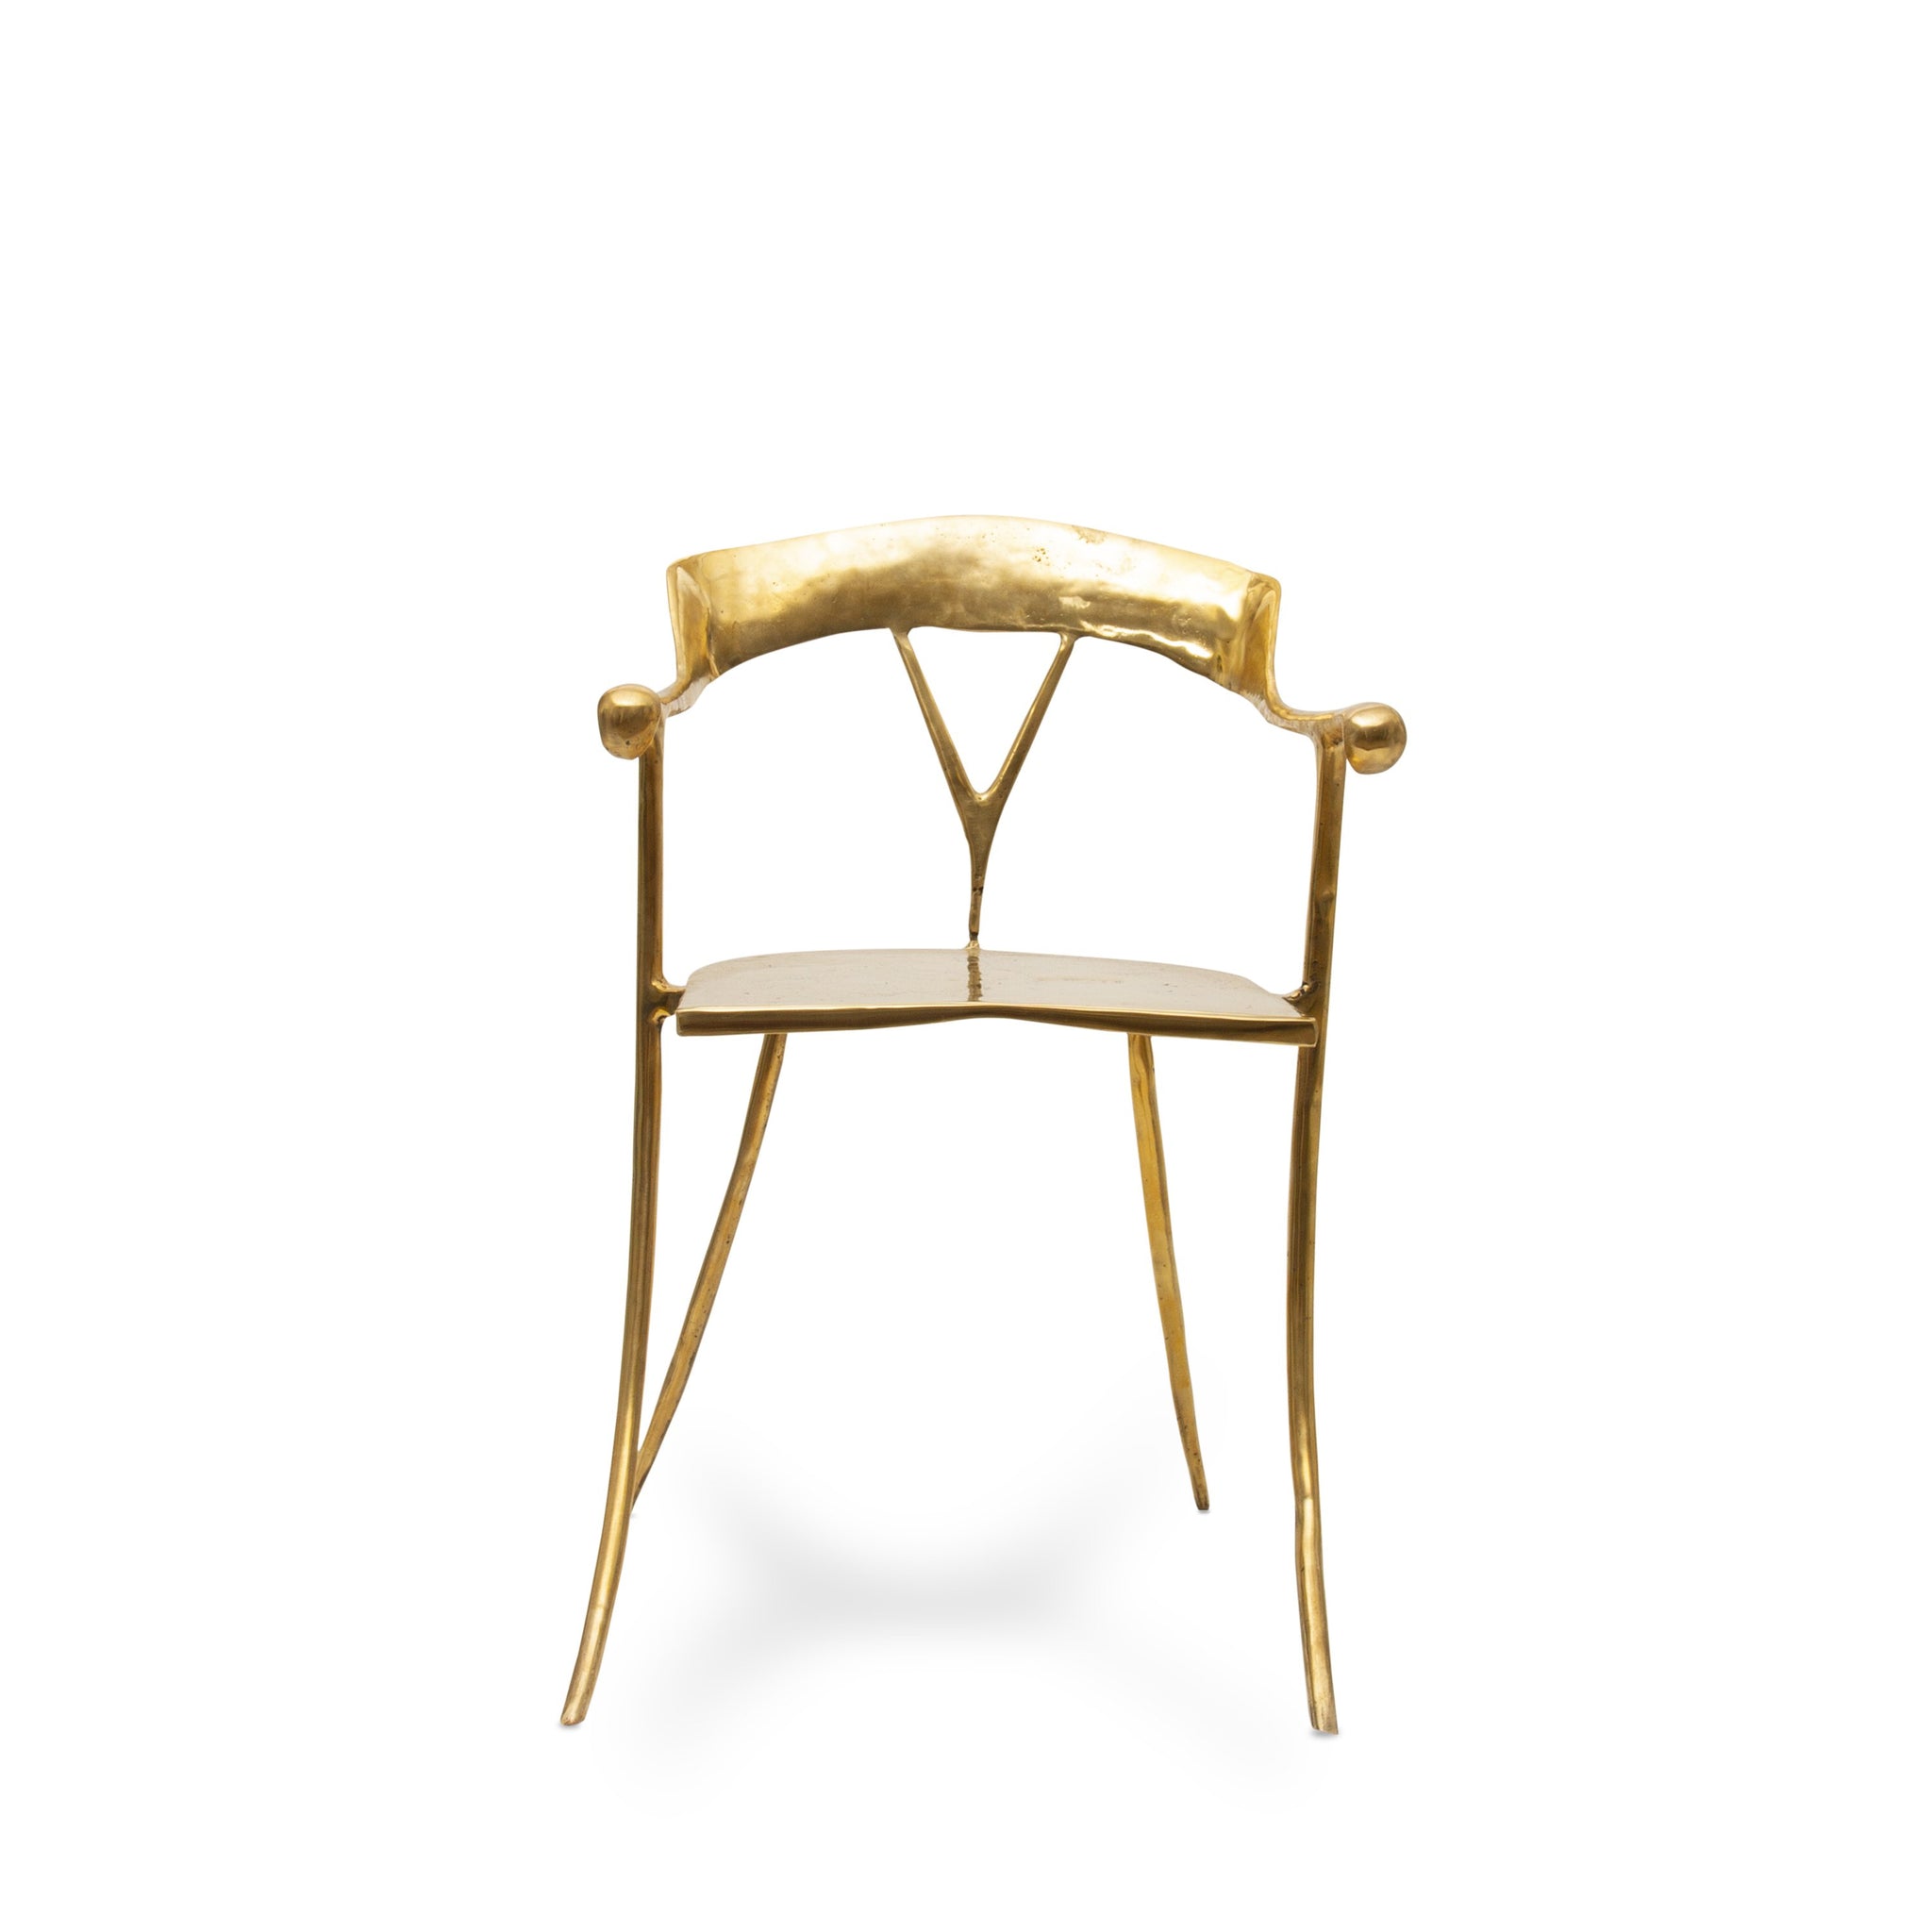 Lilys Brass Chair - Manhattan Label